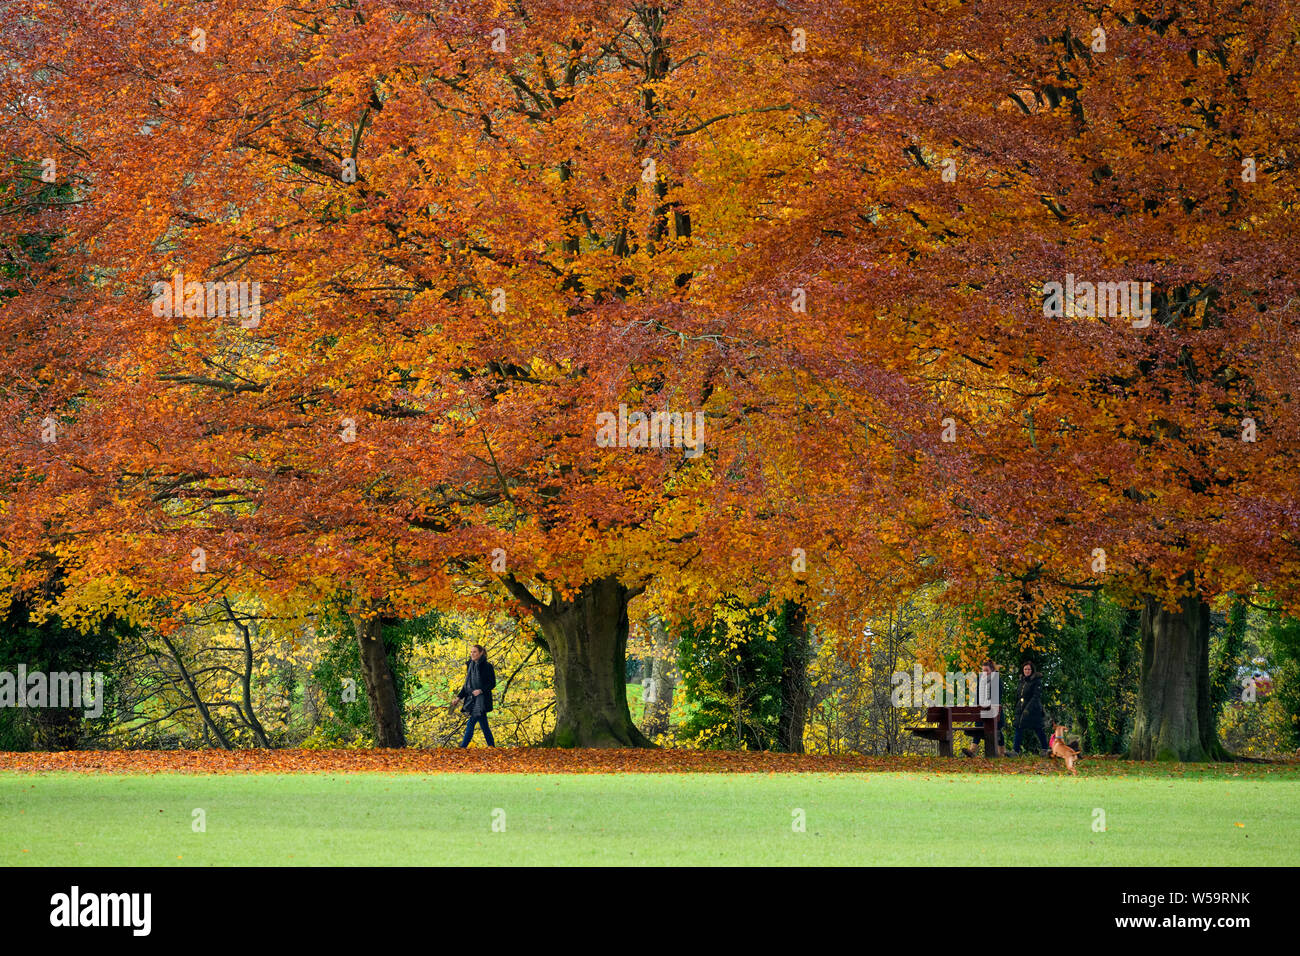 Les personnes qui s'y répand, sous d'énormes hêtres affichant des couleurs d'automne - Scenic Park Crescent, Ilkley, West Yorkshire, Angleterre, Royaume-Uni. Banque D'Images